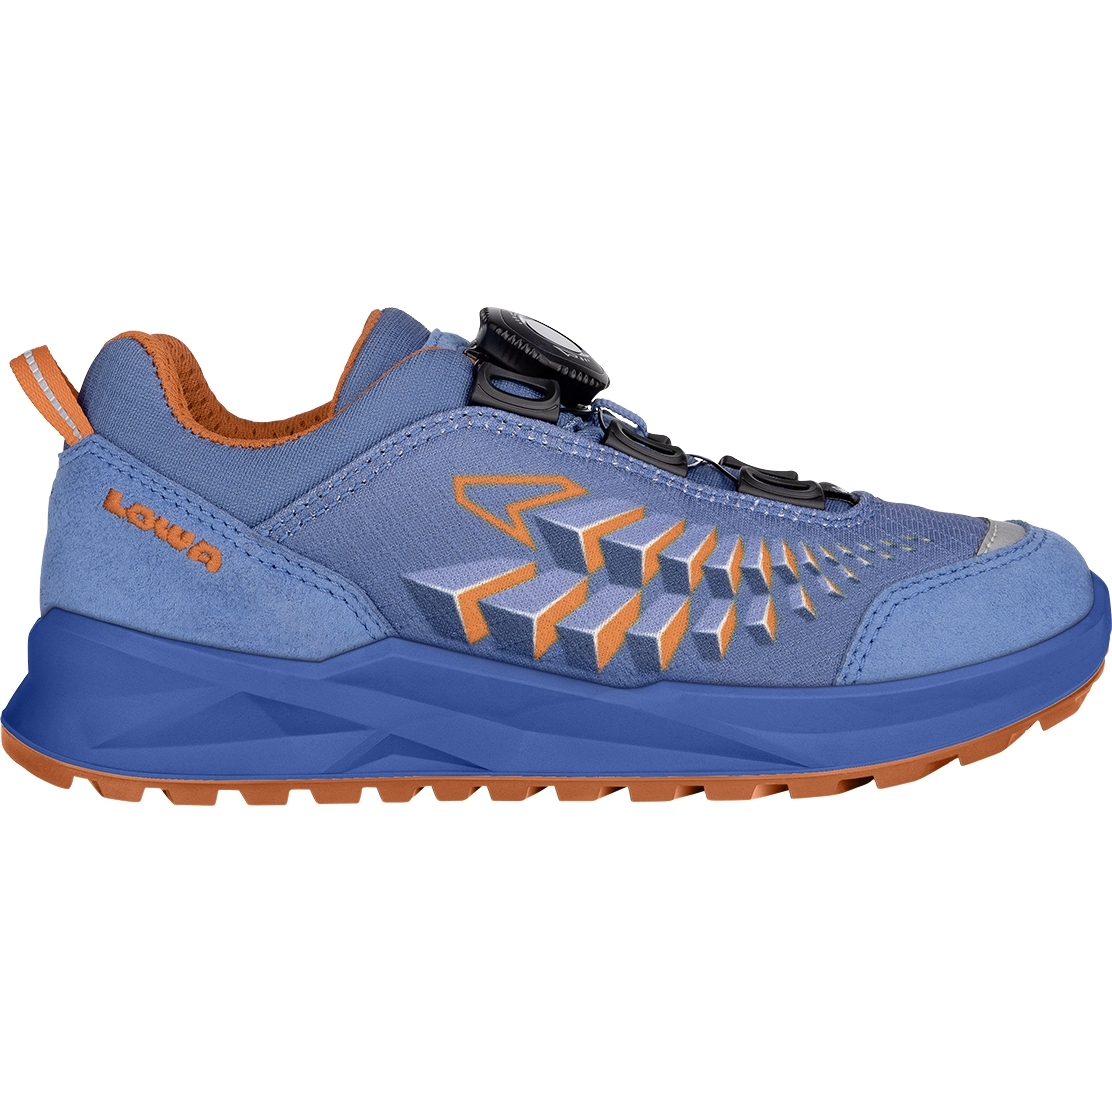 Produktbild von LOWA Ferrox GTX Lo Junior Schuhe Kinder - blau/orange (Größe 28-35)